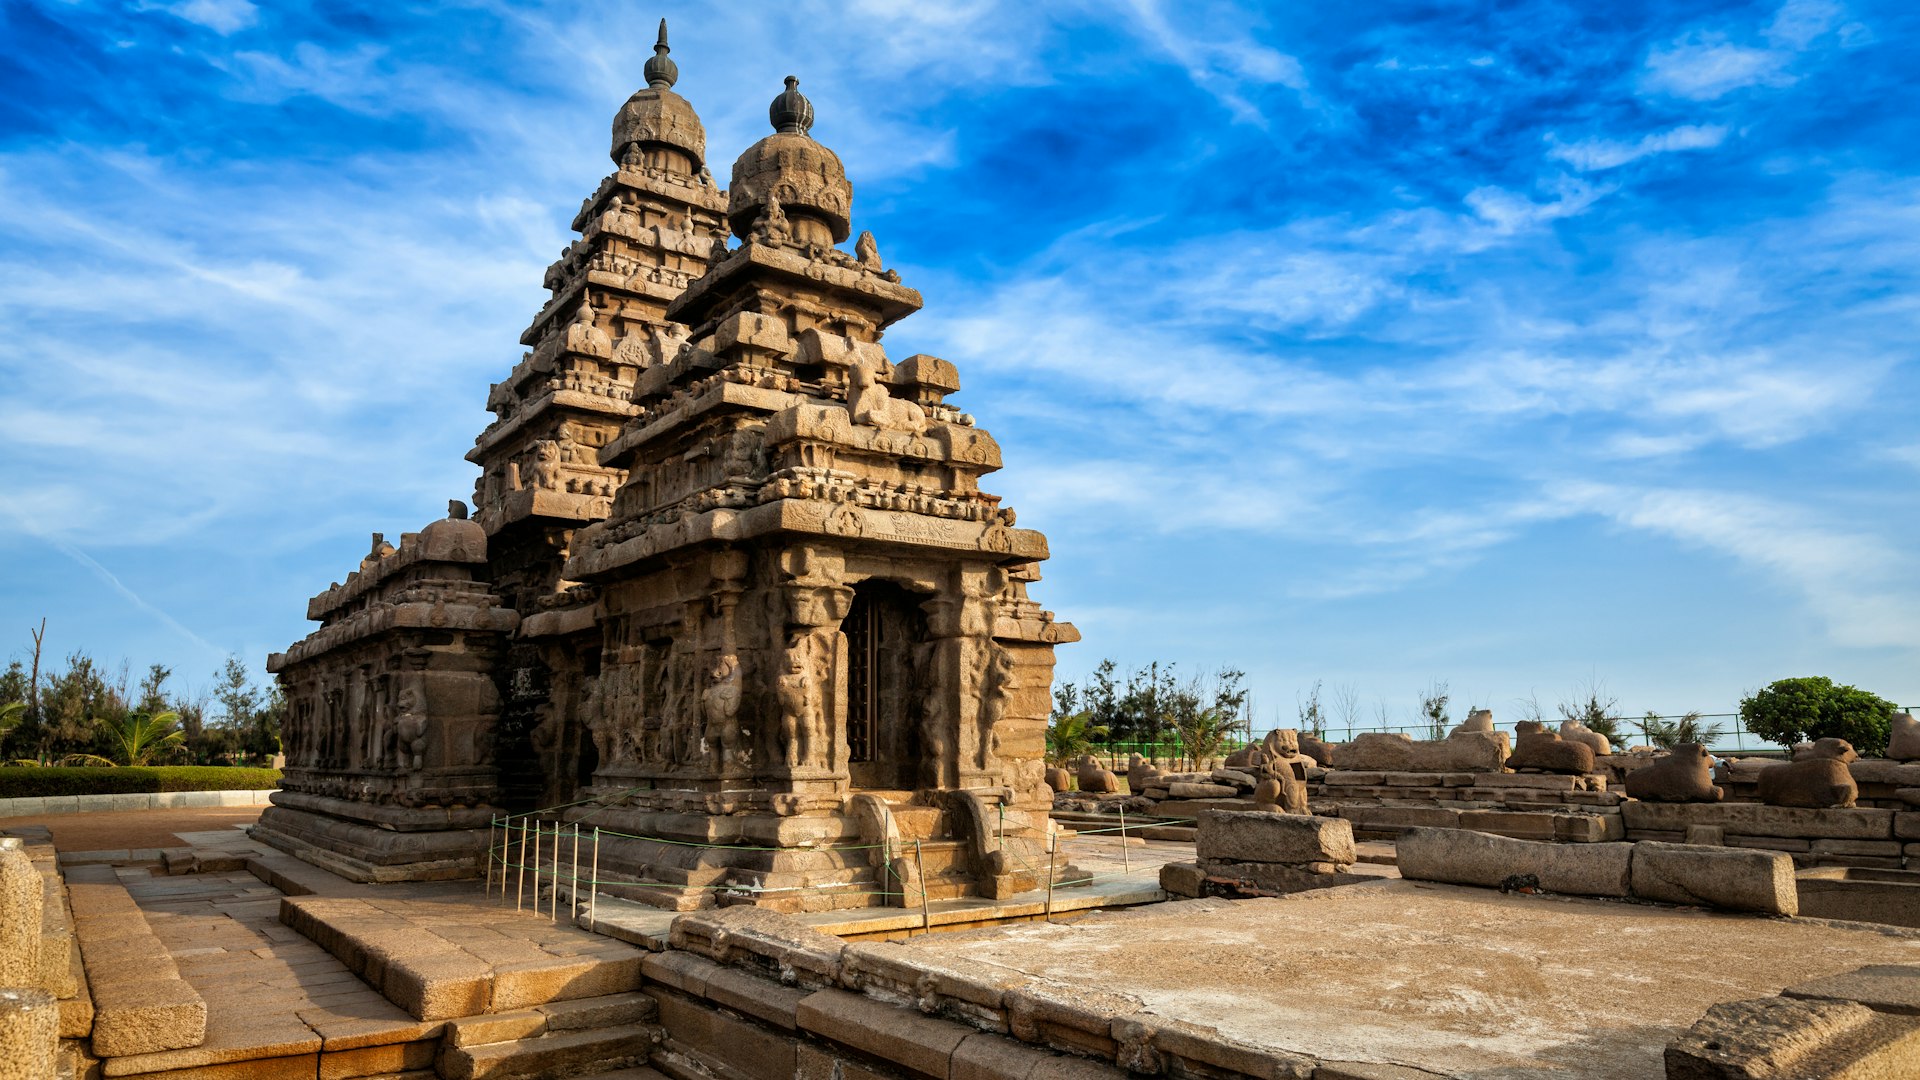 The shore temple at Mahabalipuram, Tamil Nadu, India